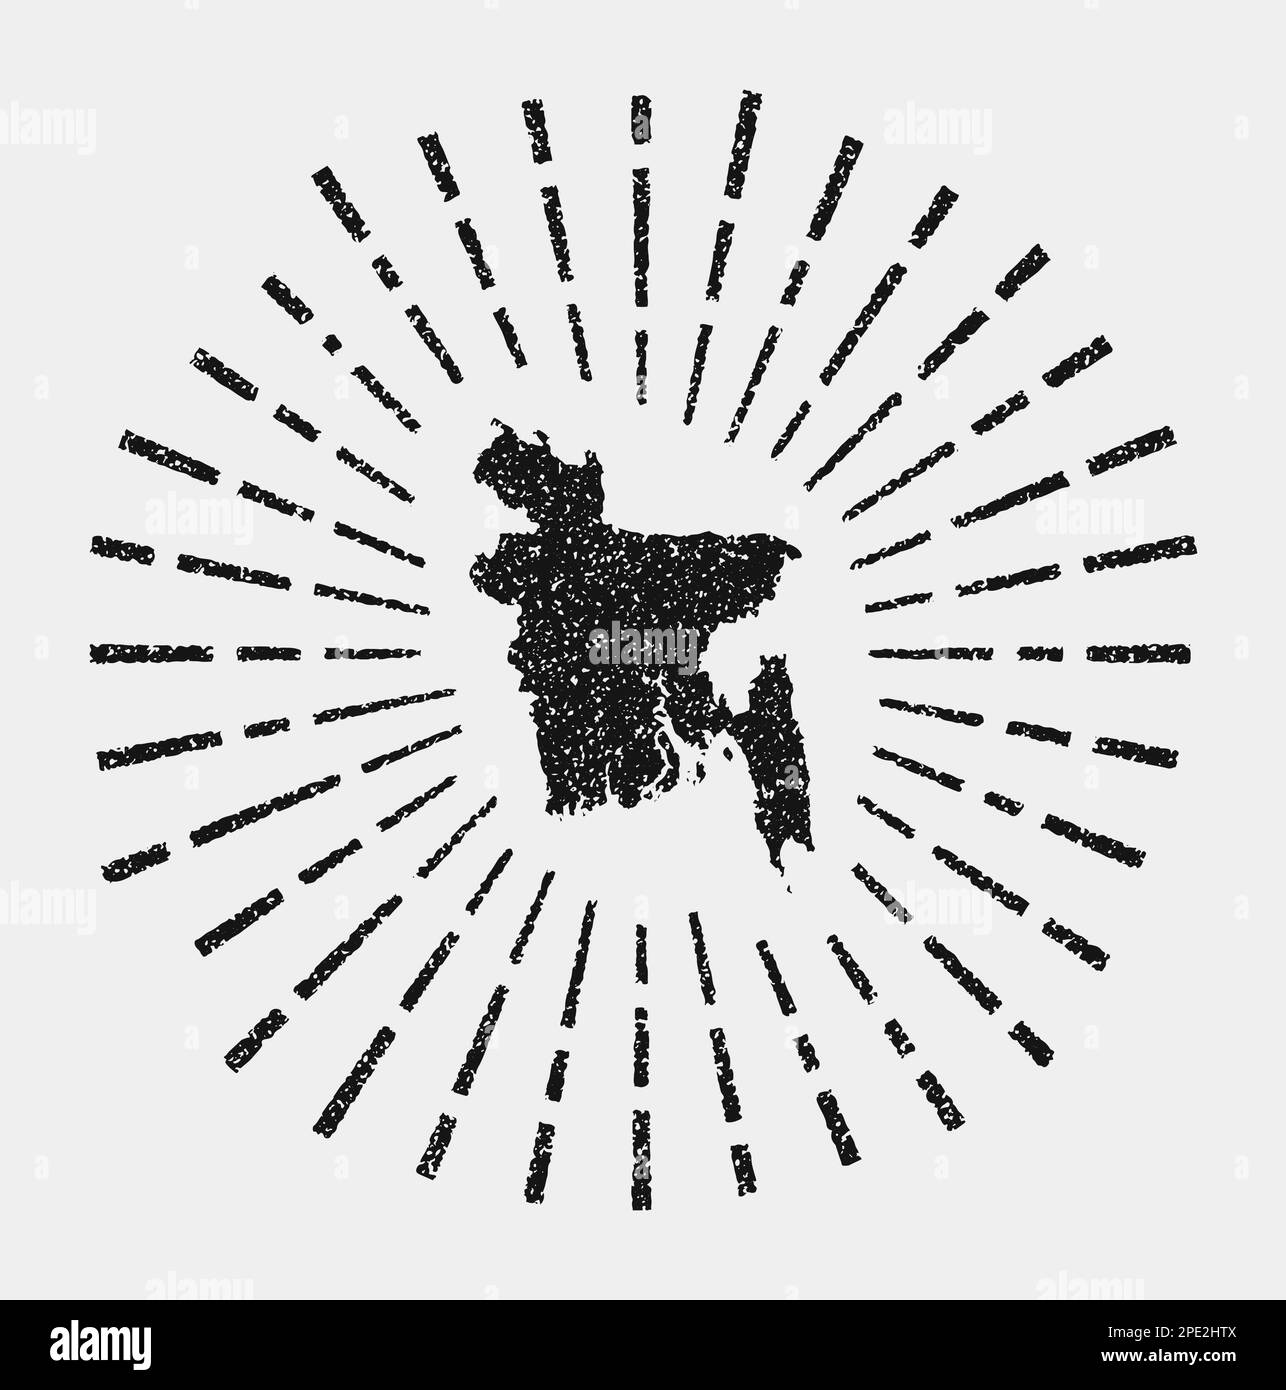 Carte d'époque du Bangladesh. Grunge soleil a éclaté dans tout le pays. Forme noire du Bangladesh avec rayons de soleil sur fond blanc. Illustration vectorielle. Illustration de Vecteur